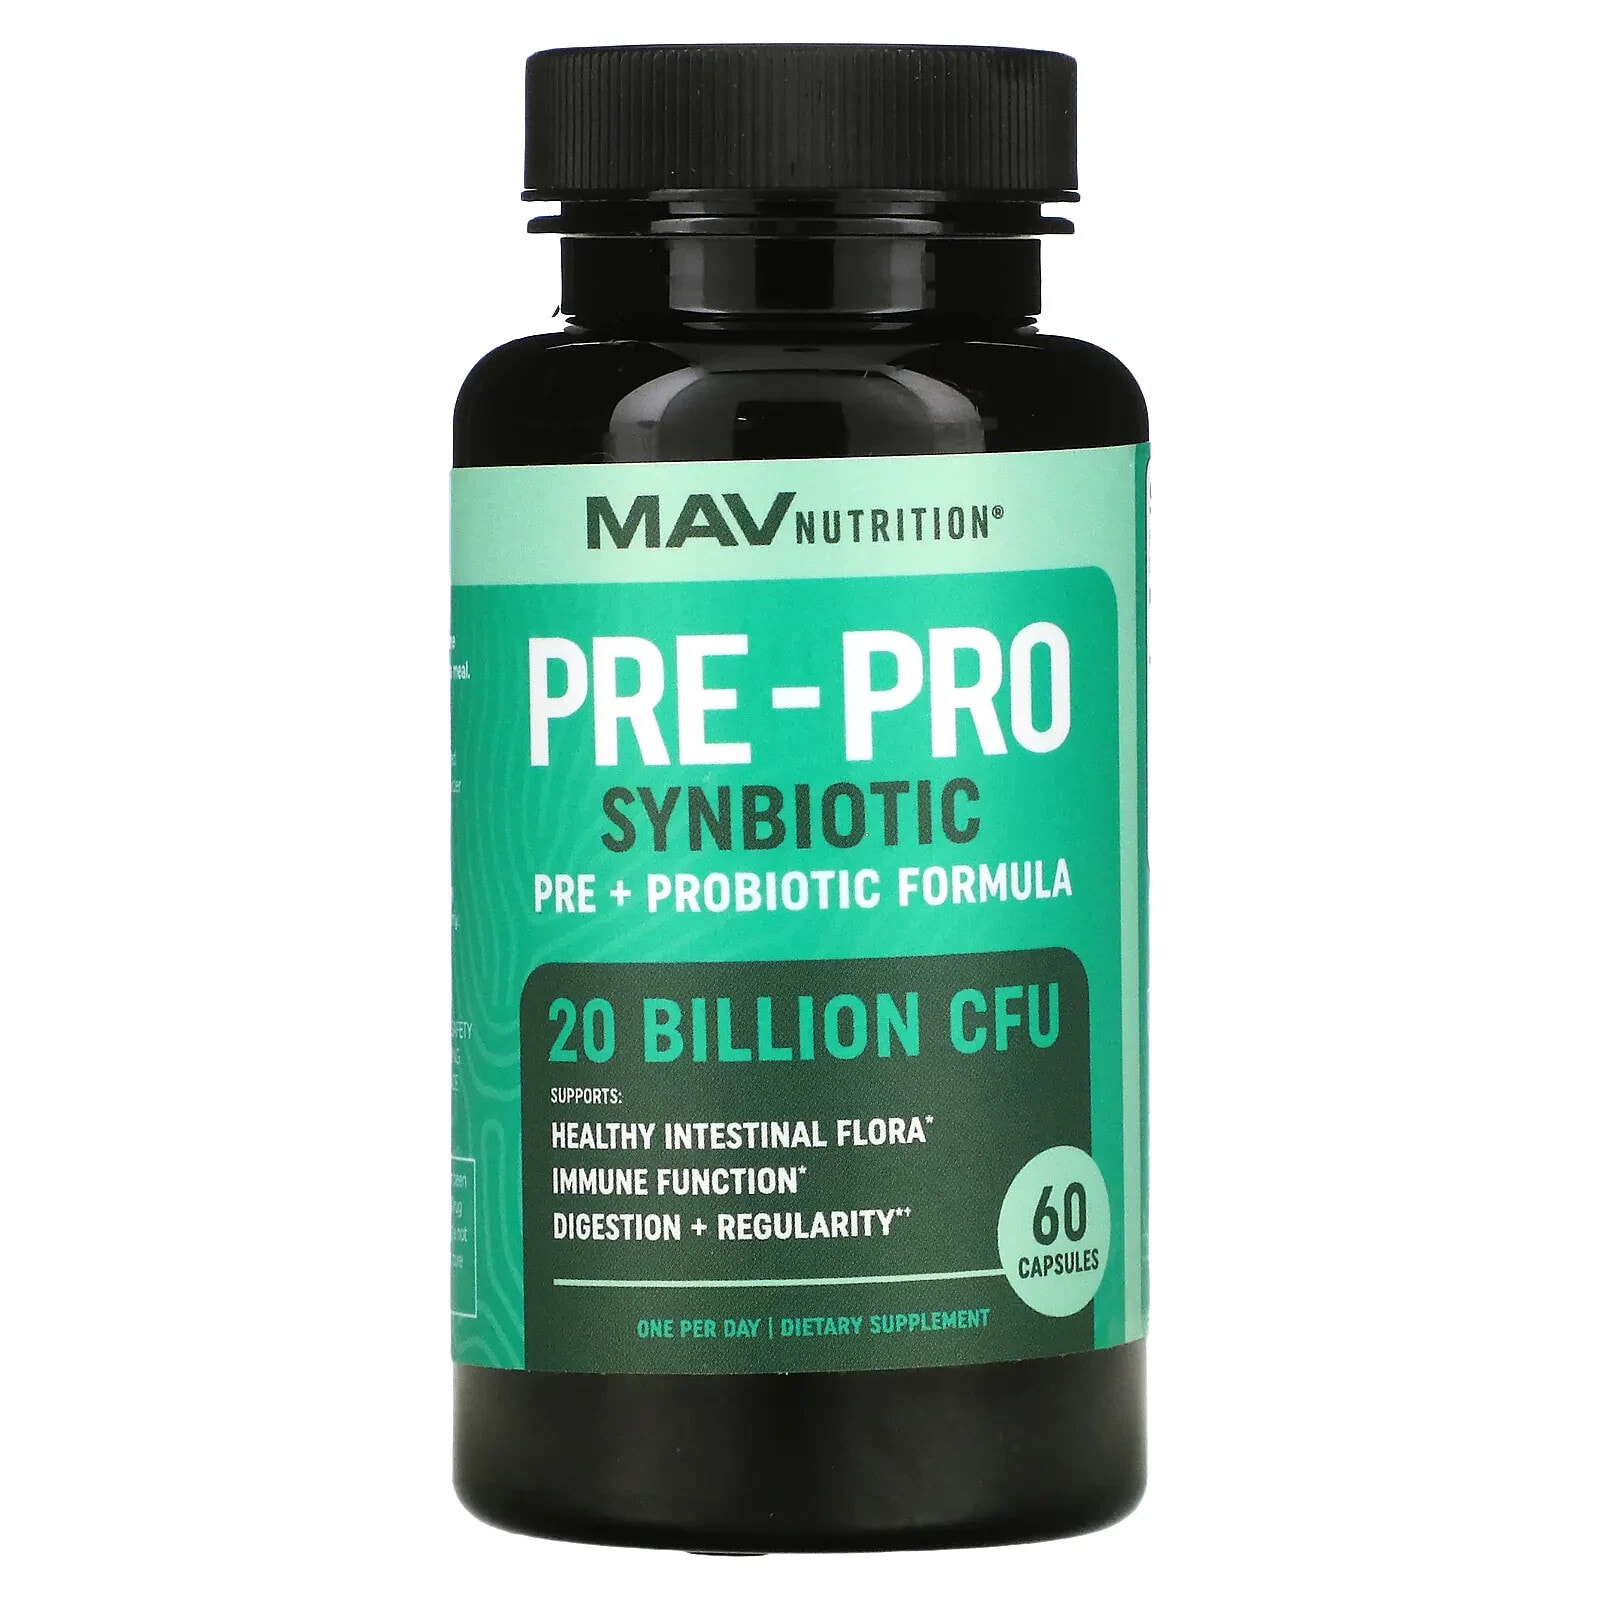 Pre-Pro Synbiotic, Pre + Probiotic Formula, 60 Capsules